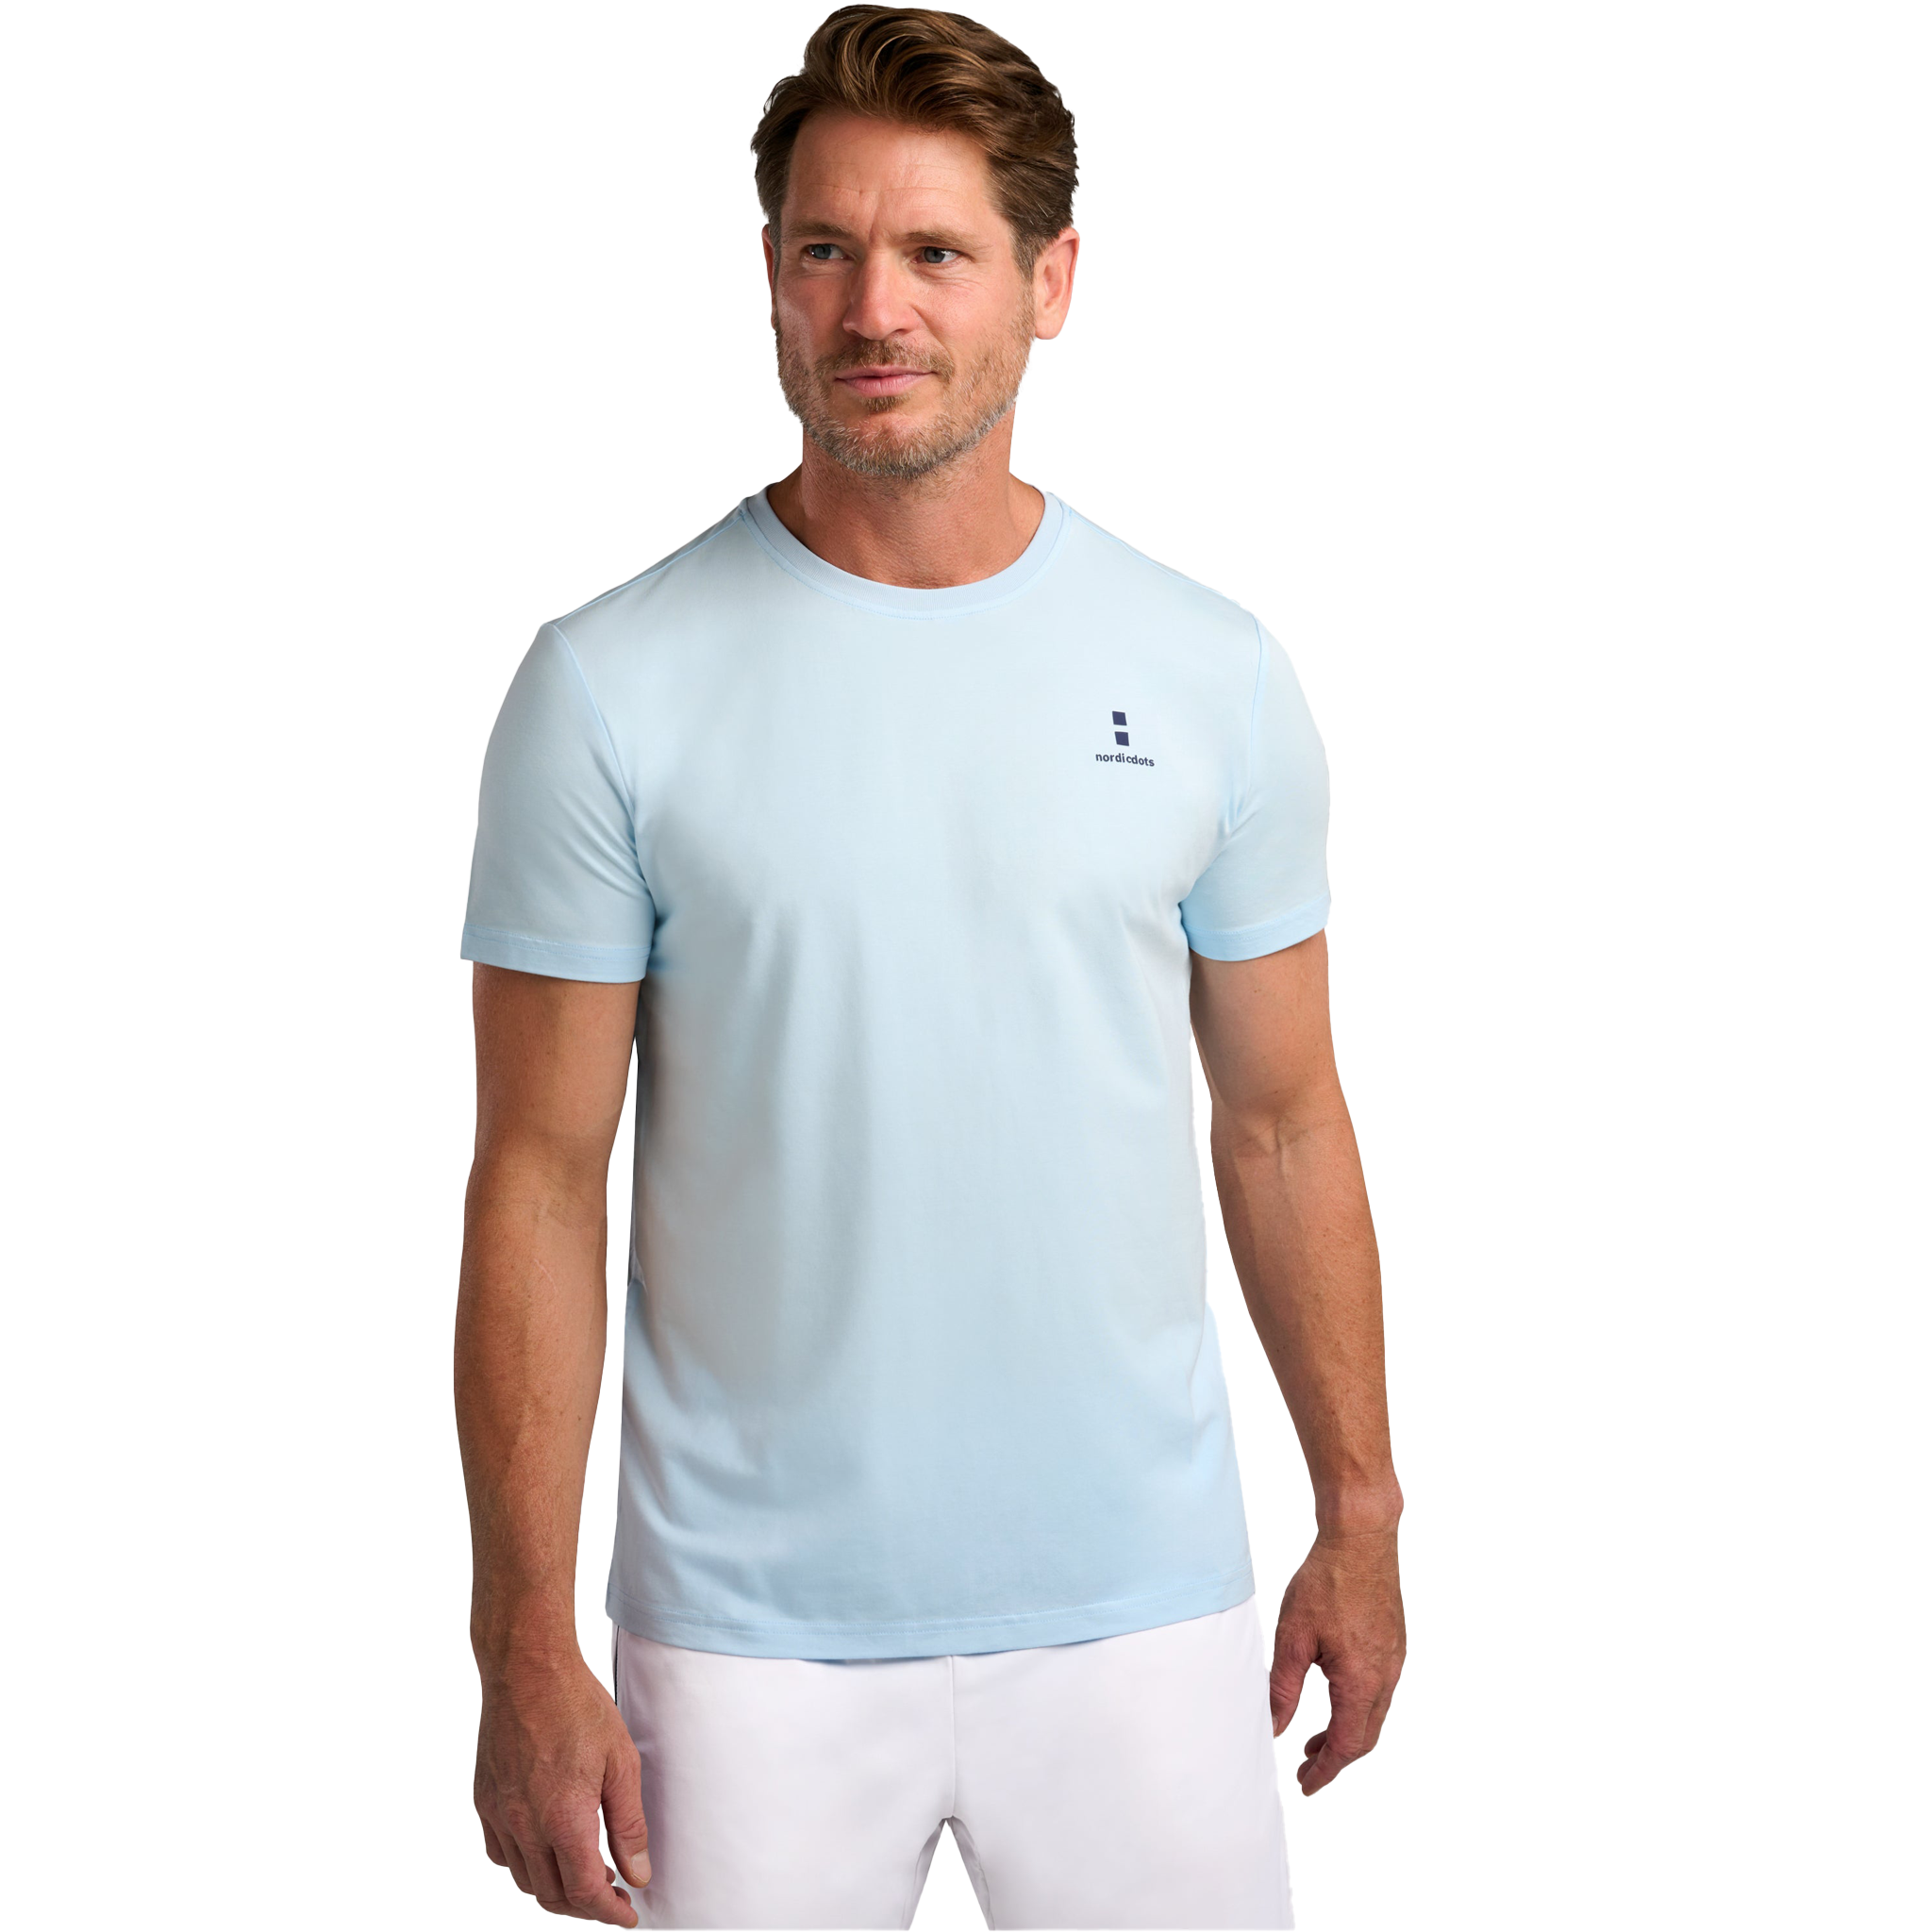 nordicdots Modal Comfort T-Shirt Sky Blue